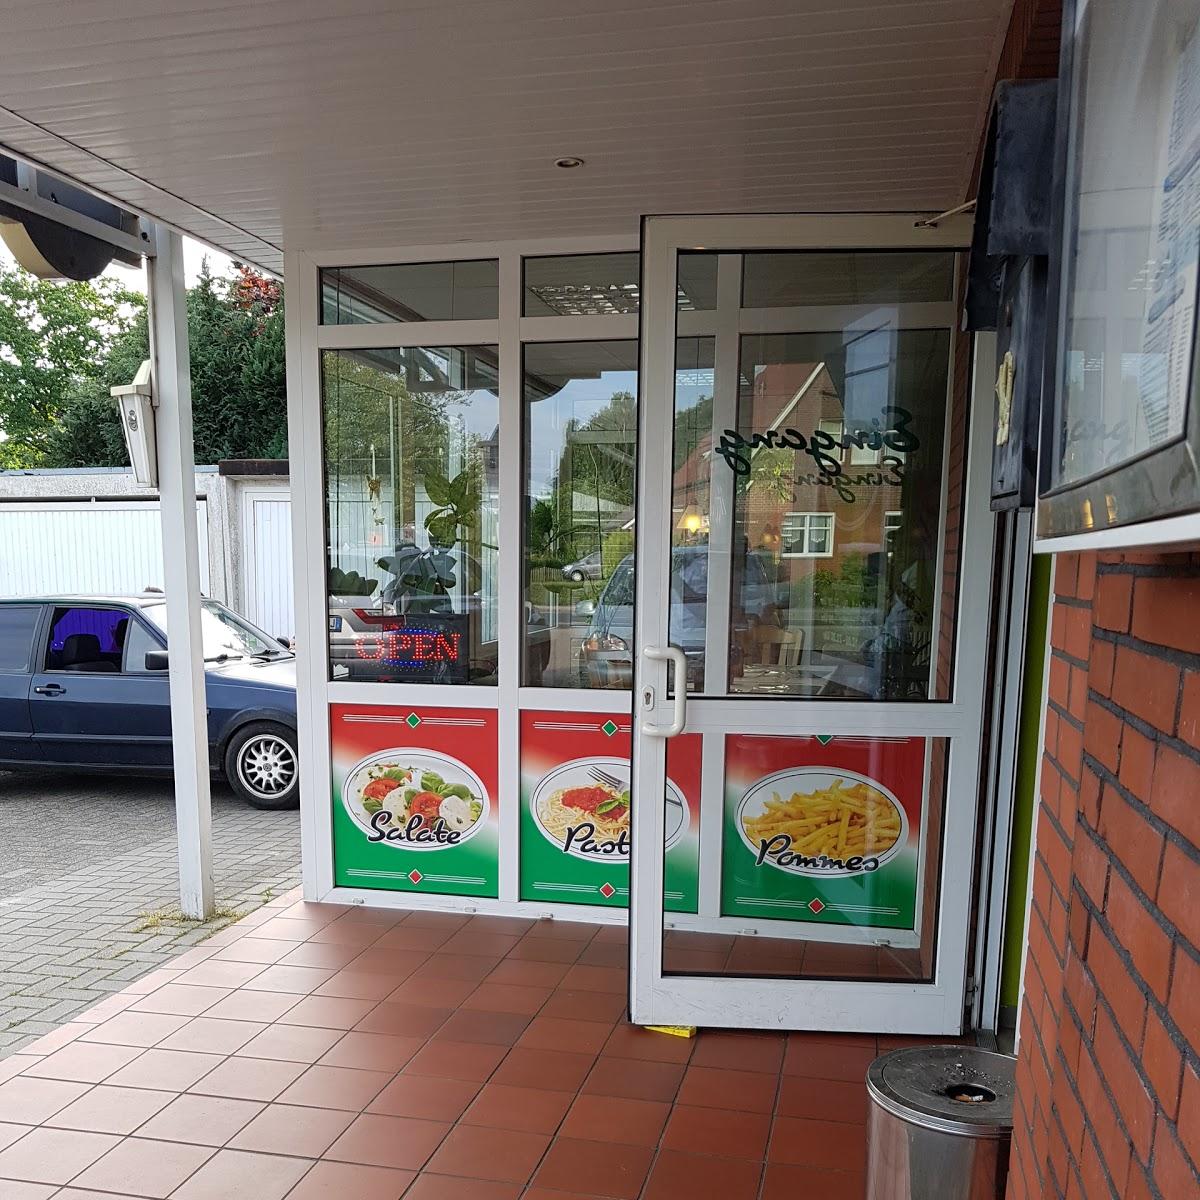 Restaurant "Pizzeria Bei Rita" in Westoverledingen